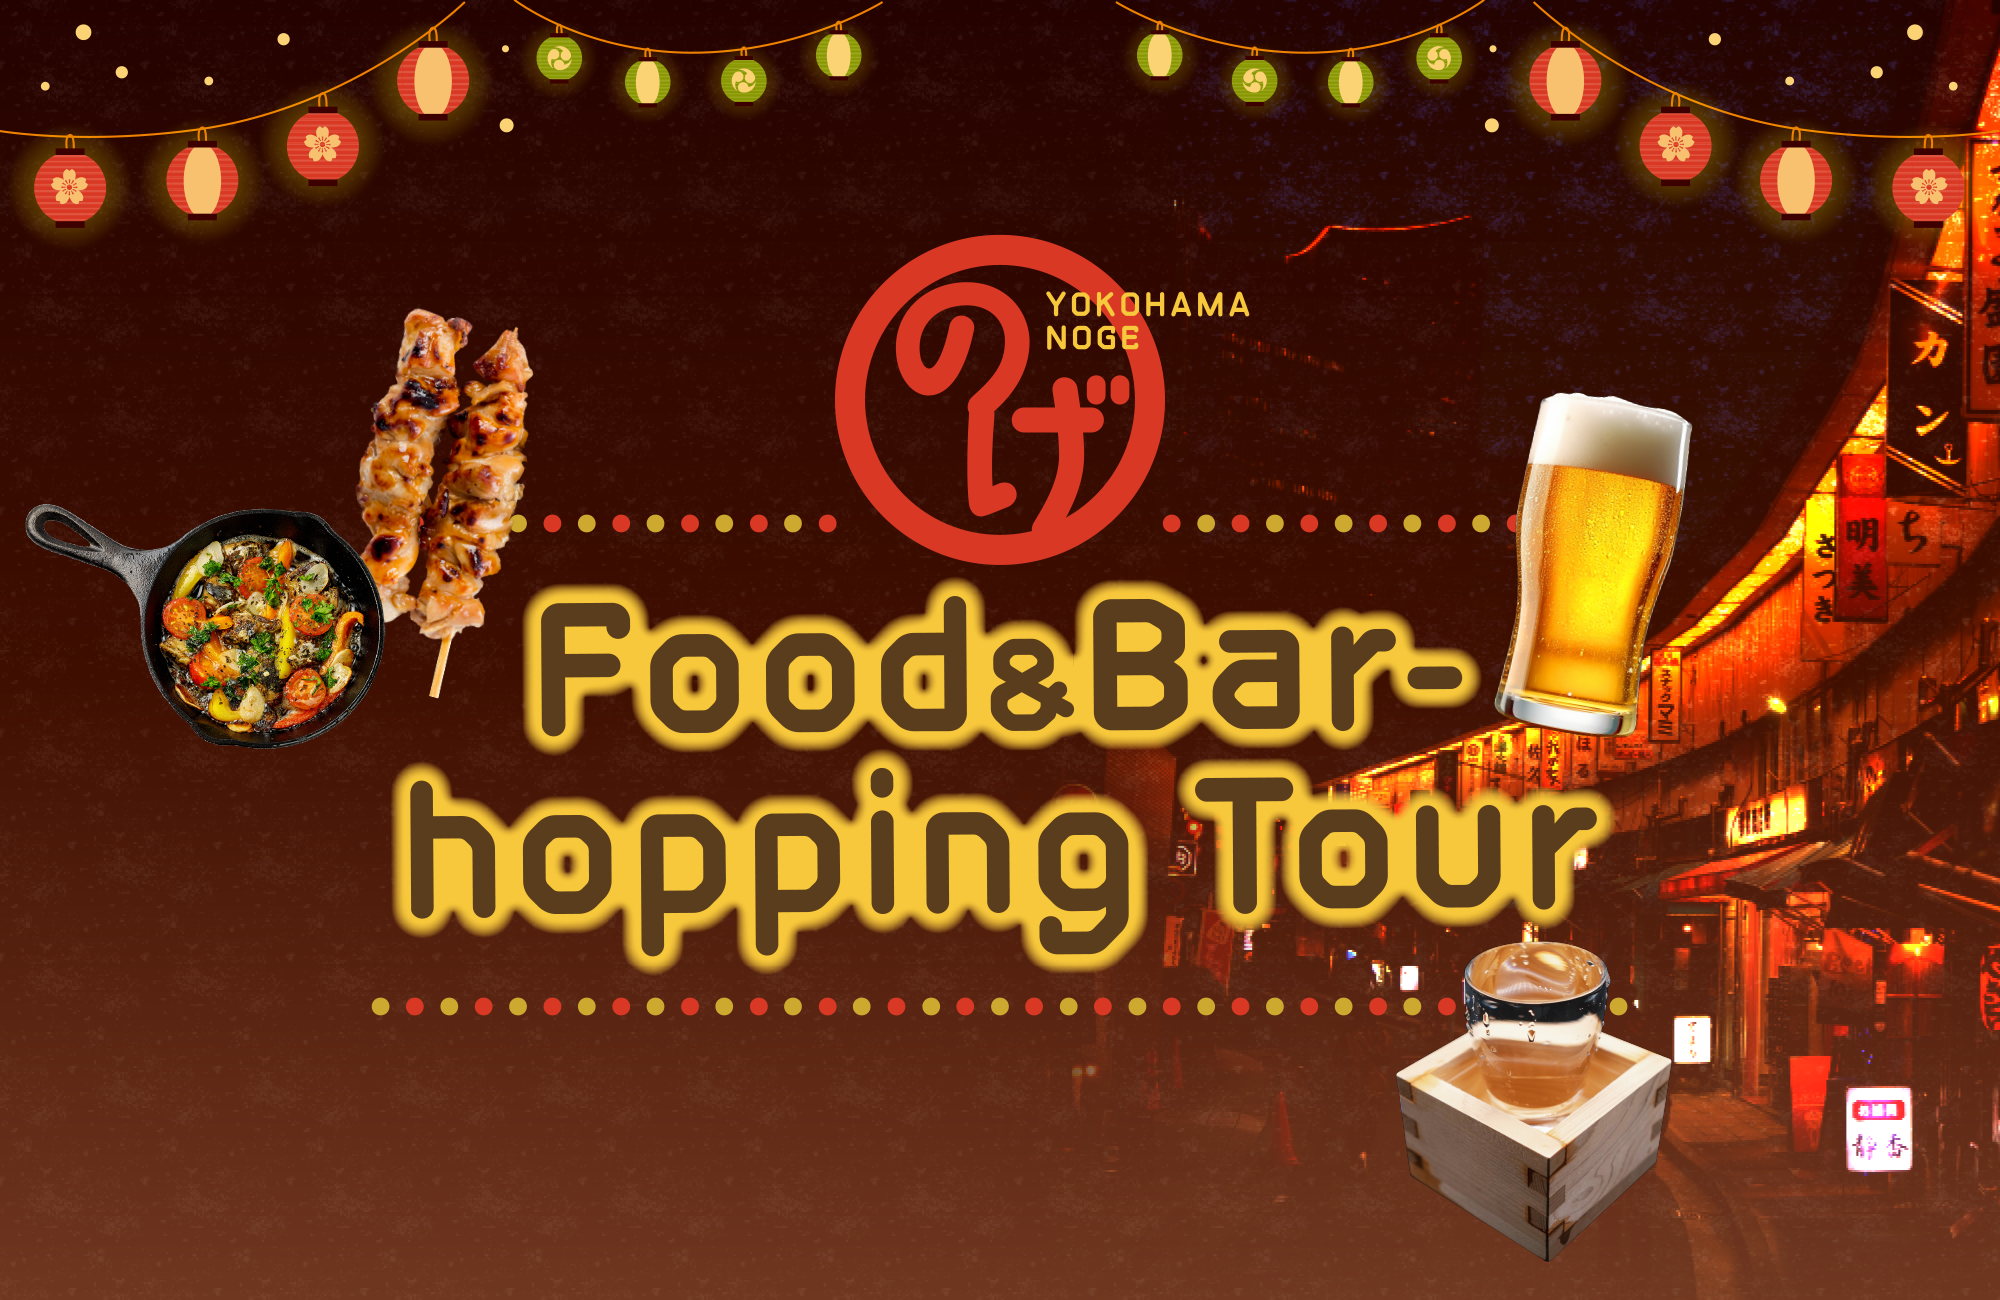 Noge Food & Bar-hopping Tour